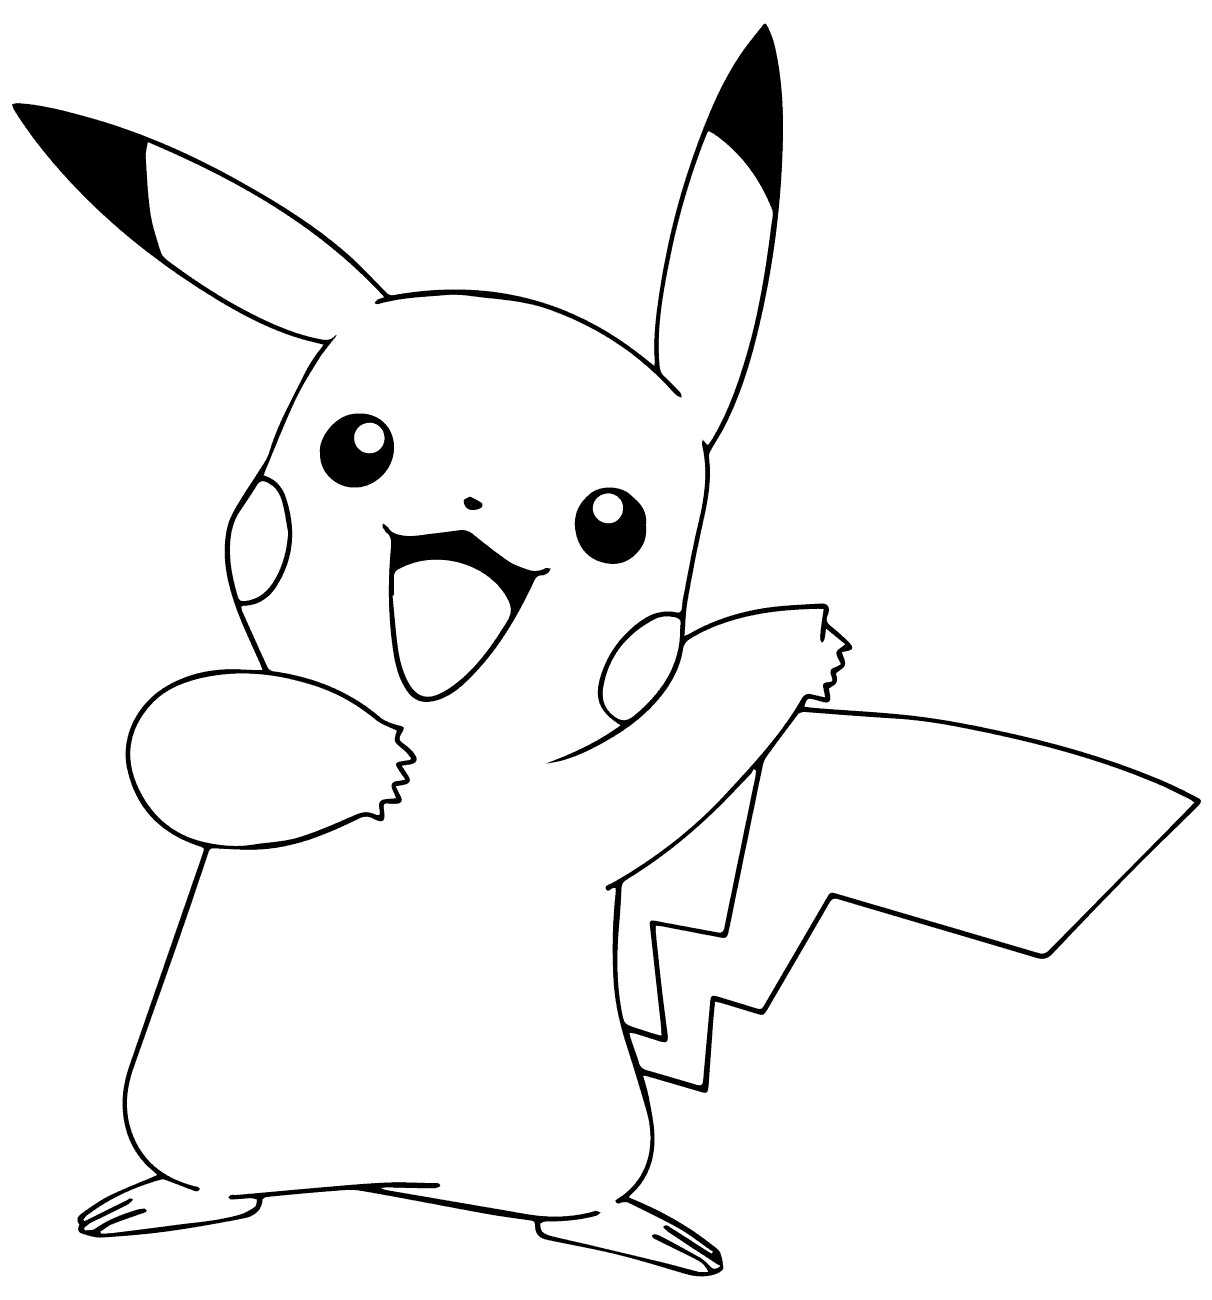 Xem hơn 100 ảnh về hình vẽ pikachu bằng bút chì  NEC